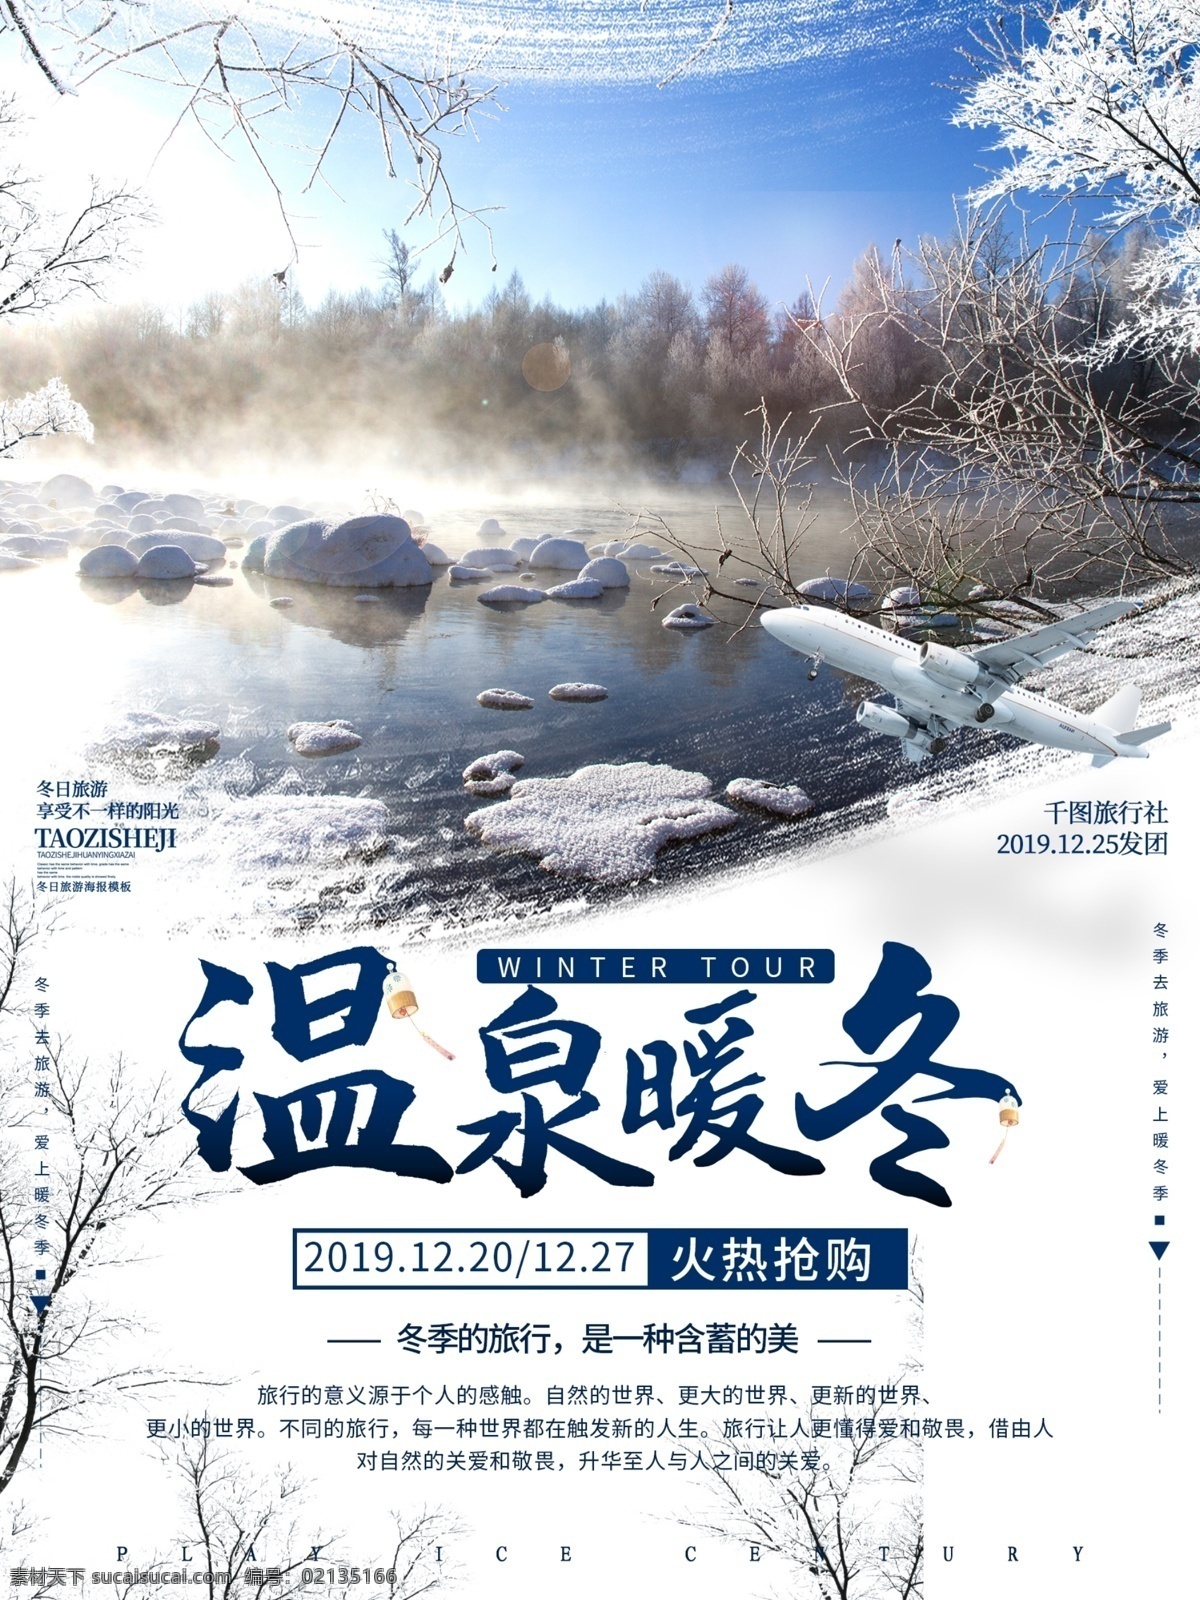 蓝色 温泉 暖冬 冬季 旅游 冬季之旅 冬天 冬季背景 冬季促销 度假 旅行 旅游海报